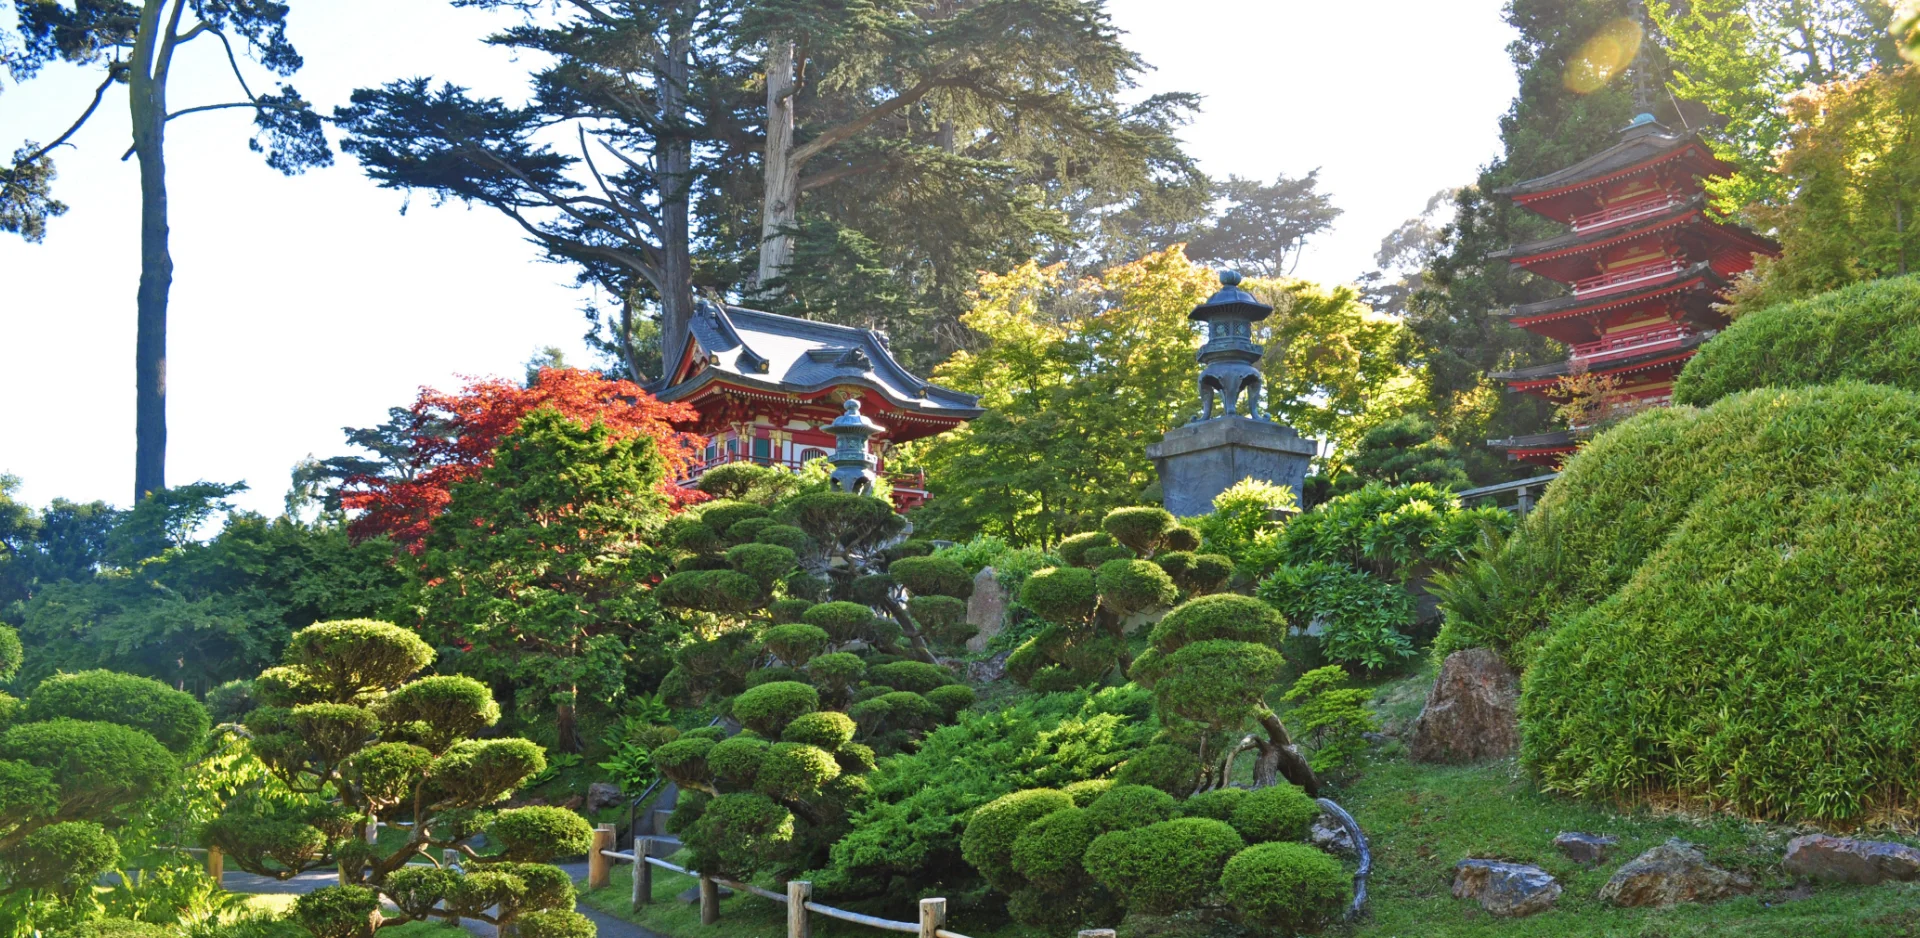 Life in San Francisco - Japanese Tea Garden